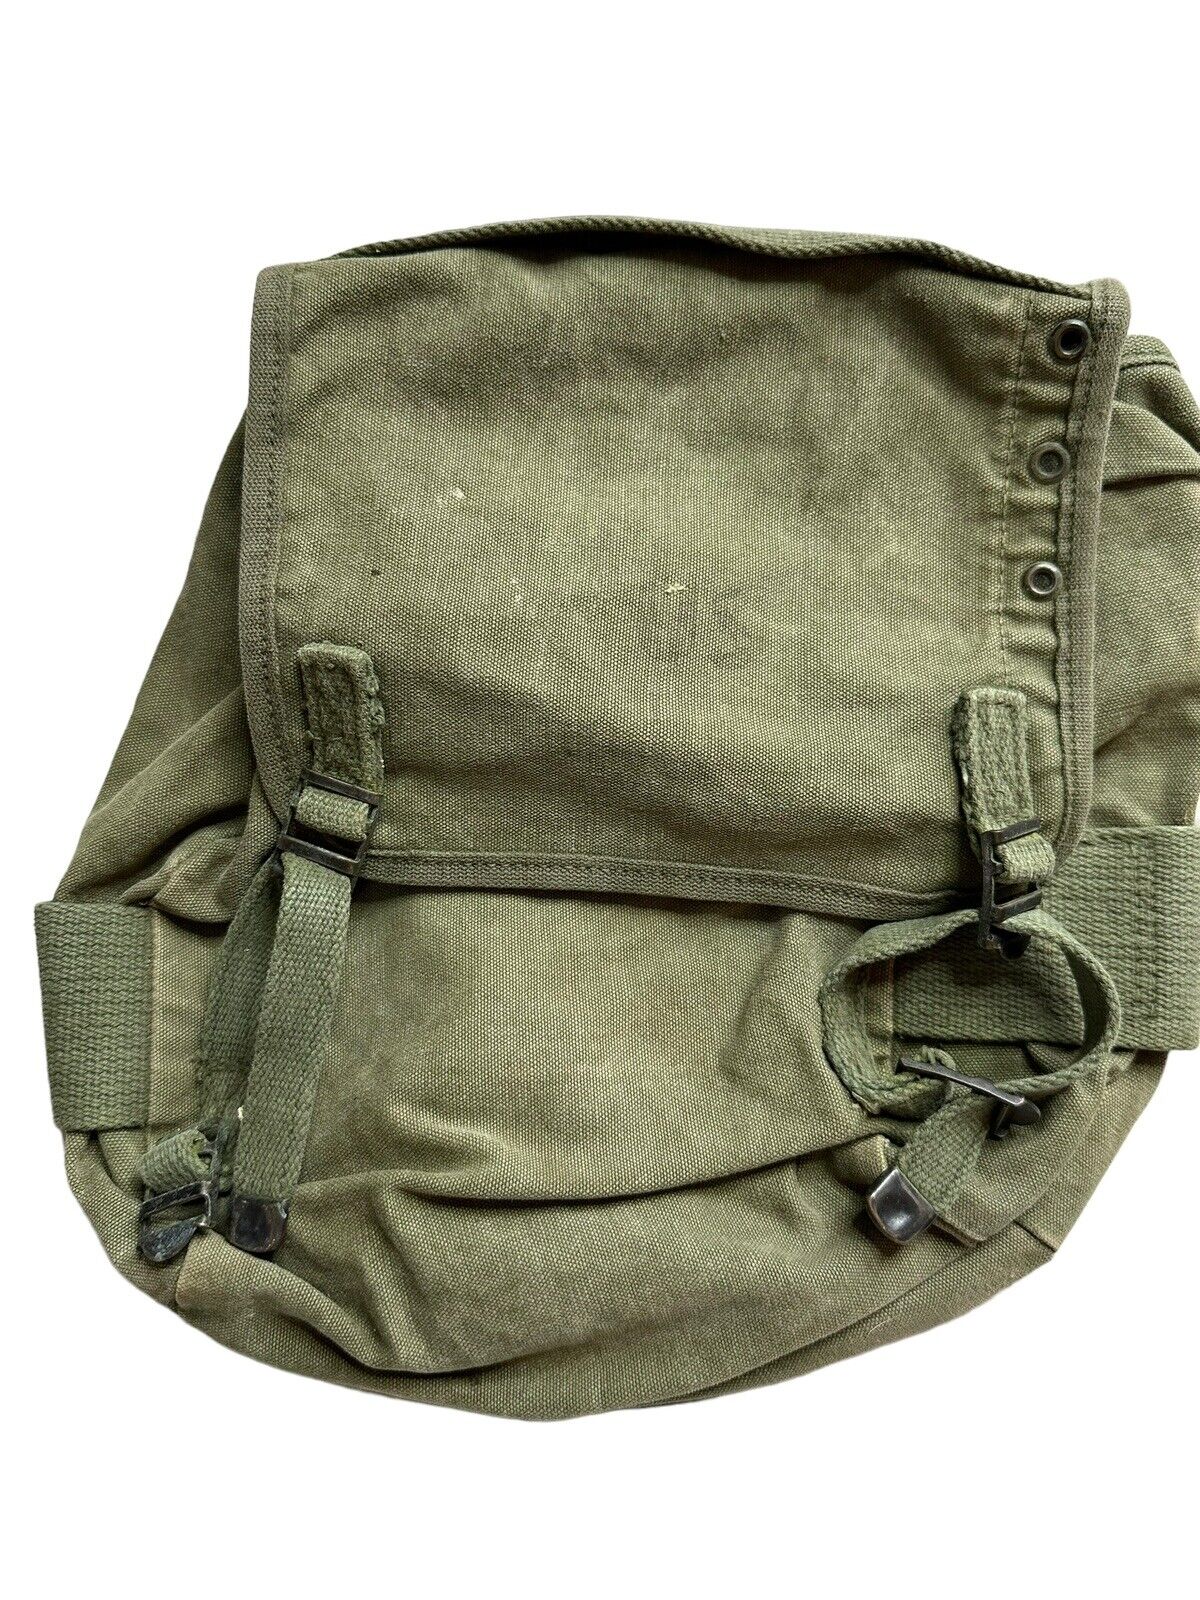  Vietnam Era US M1961 Buttpack Field Pack